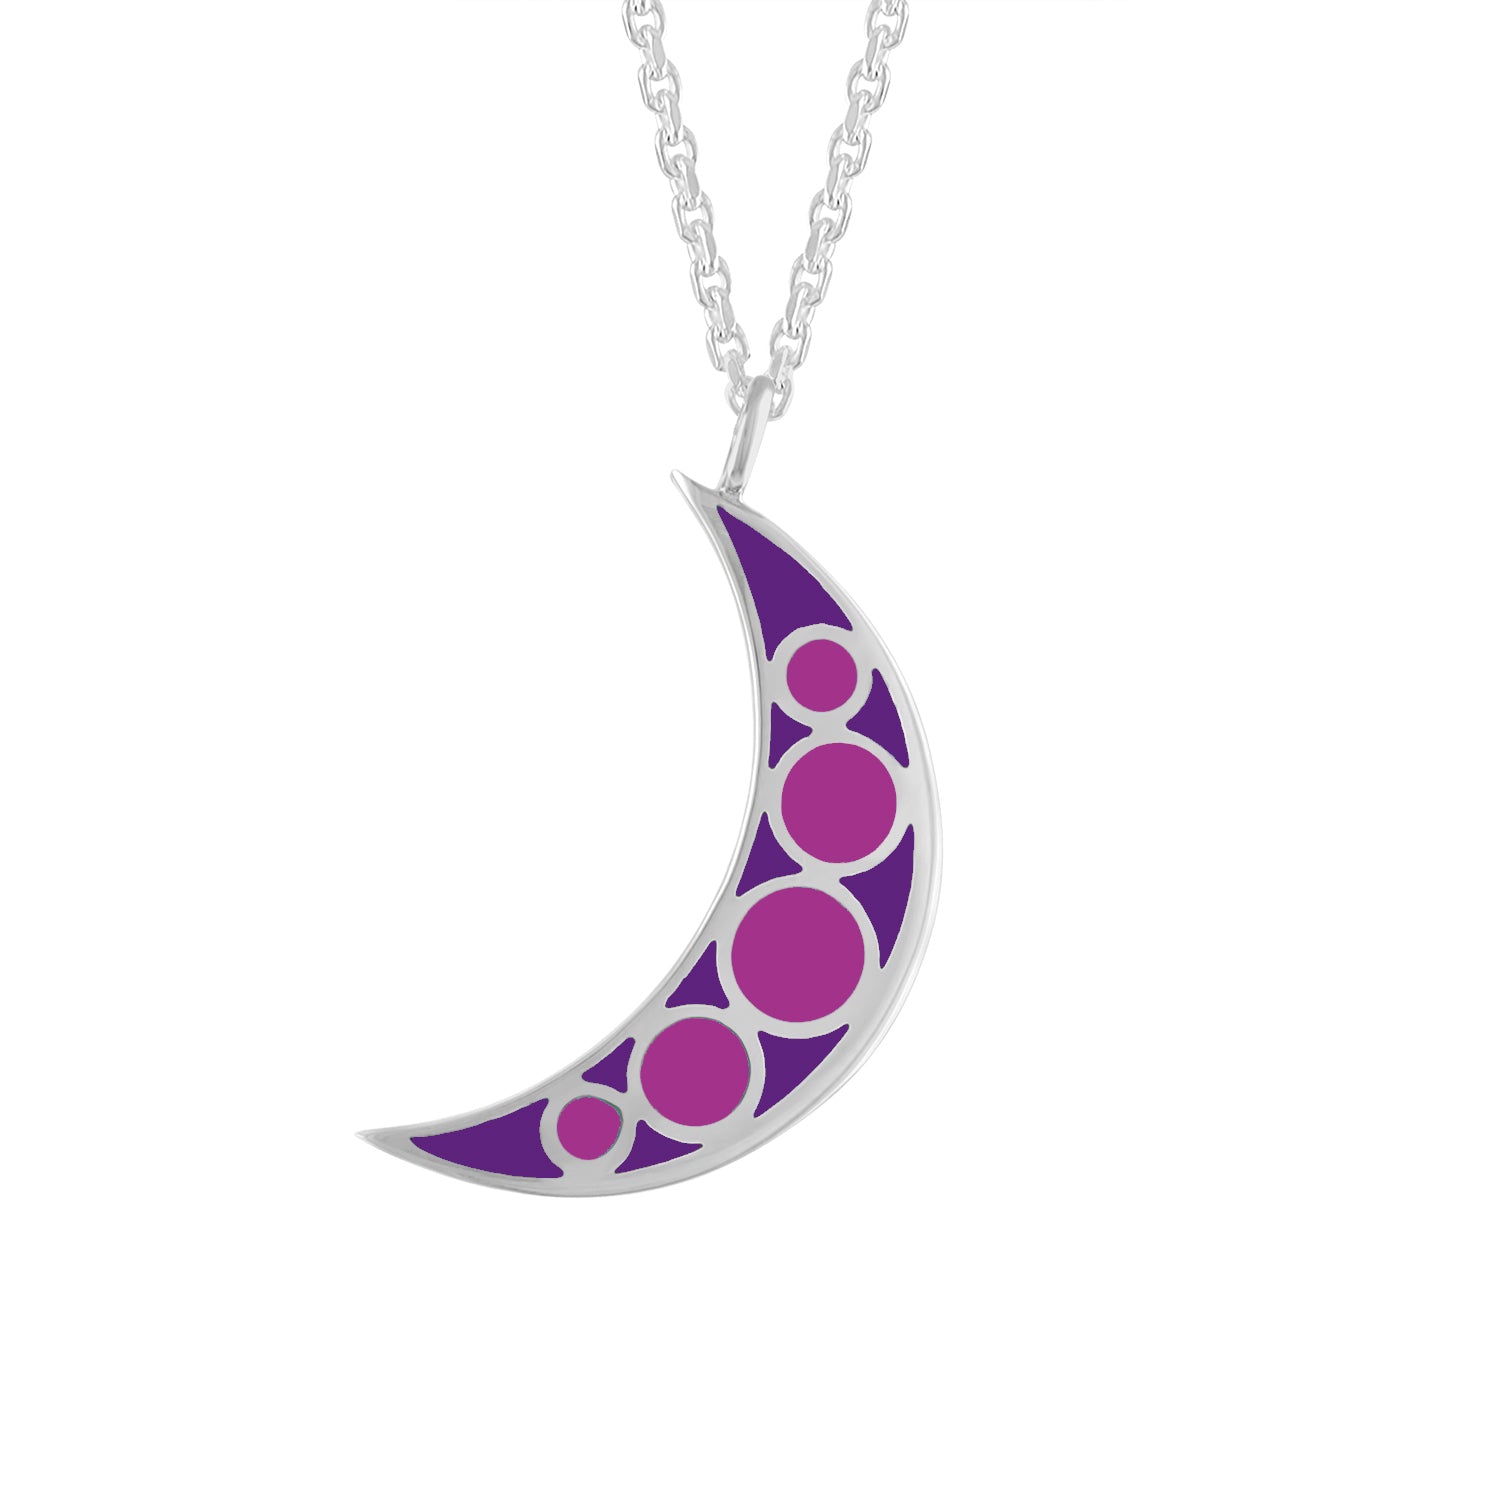 purple enamel moon charm reversible necklace pendant